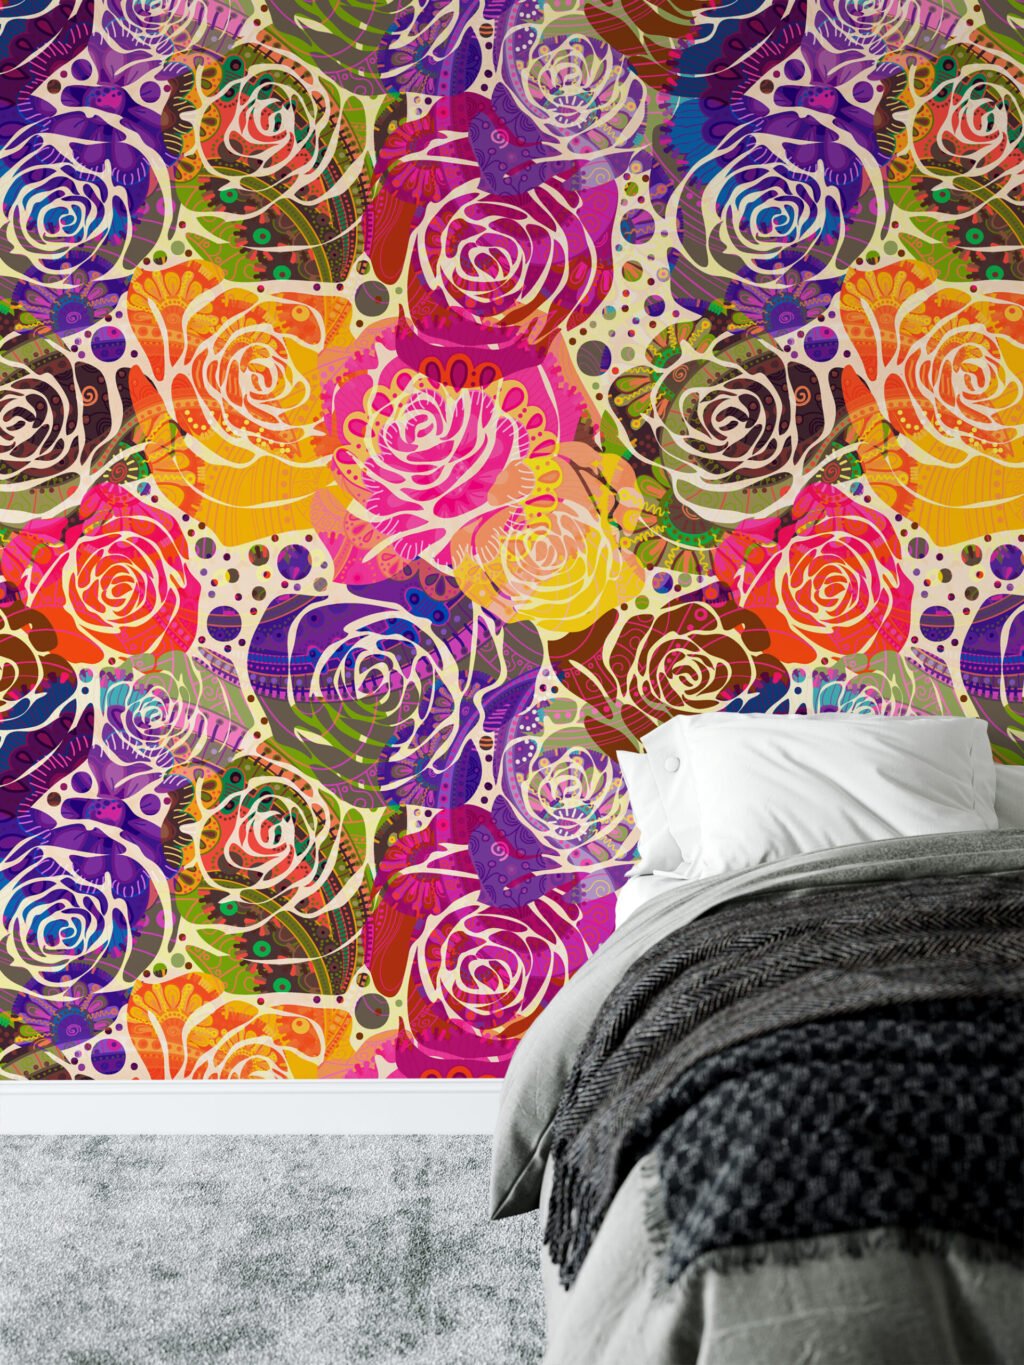 Abstract Renkli Güller Duvar Kağıdı, Canlı Gül Kolajı 3D Duvar Posteri Çiçekli Duvar Kağıtları 6